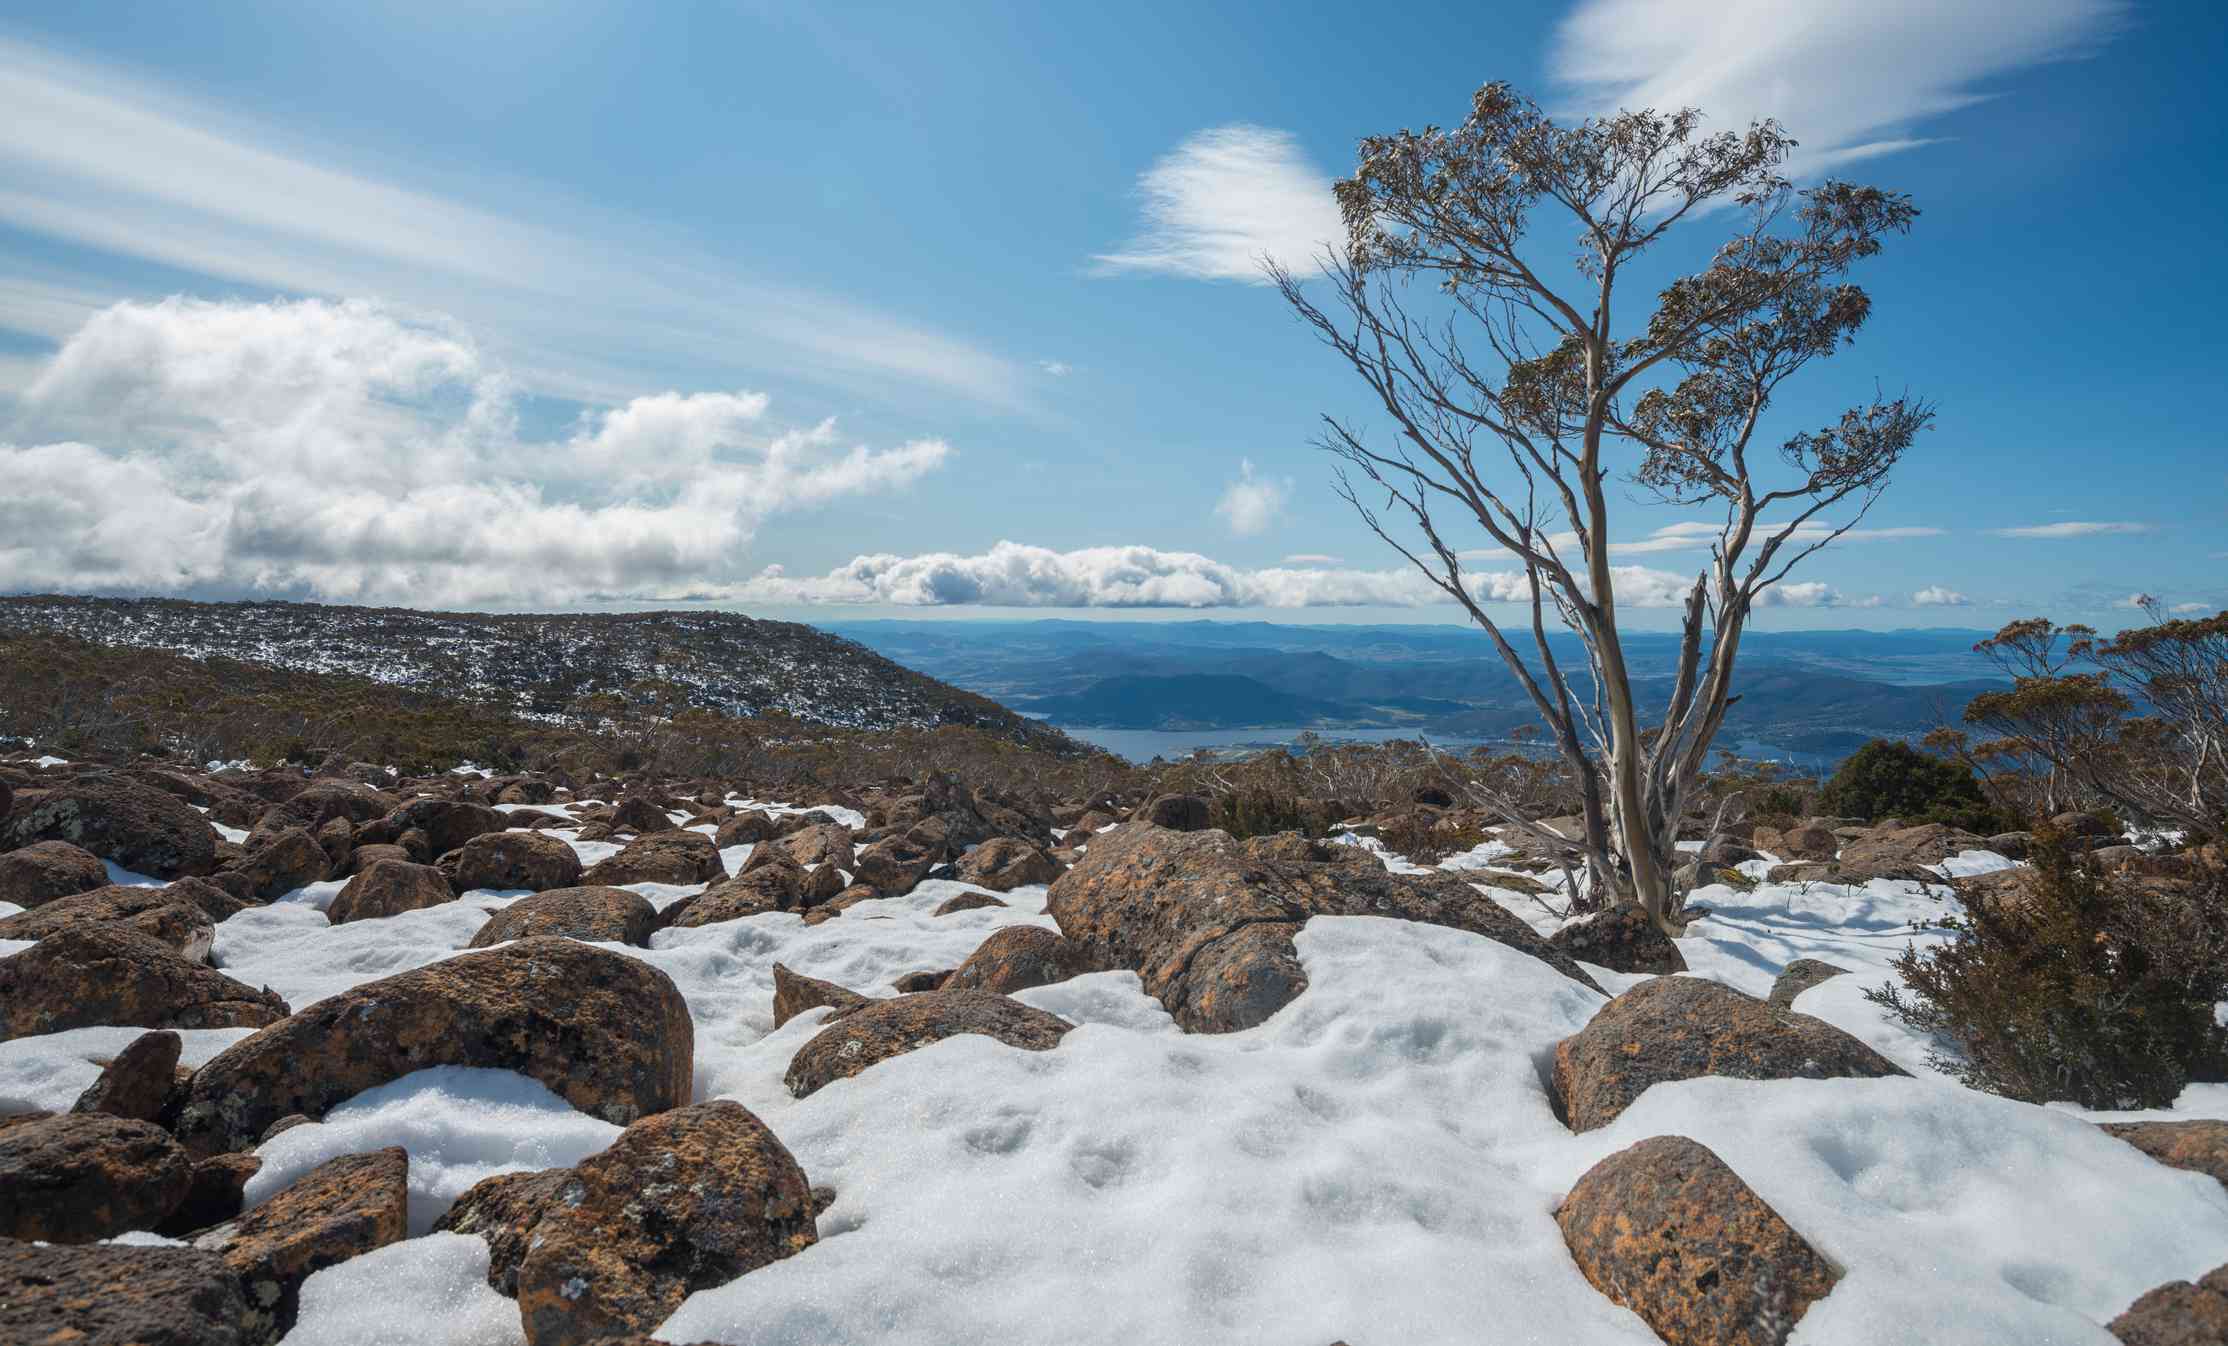 Vista desde la cima del monte Wellington cubierta parcialmente de nieve blanca y rocas con un solo árbol bajo un cielo azul soleado con algunas nubes blancas